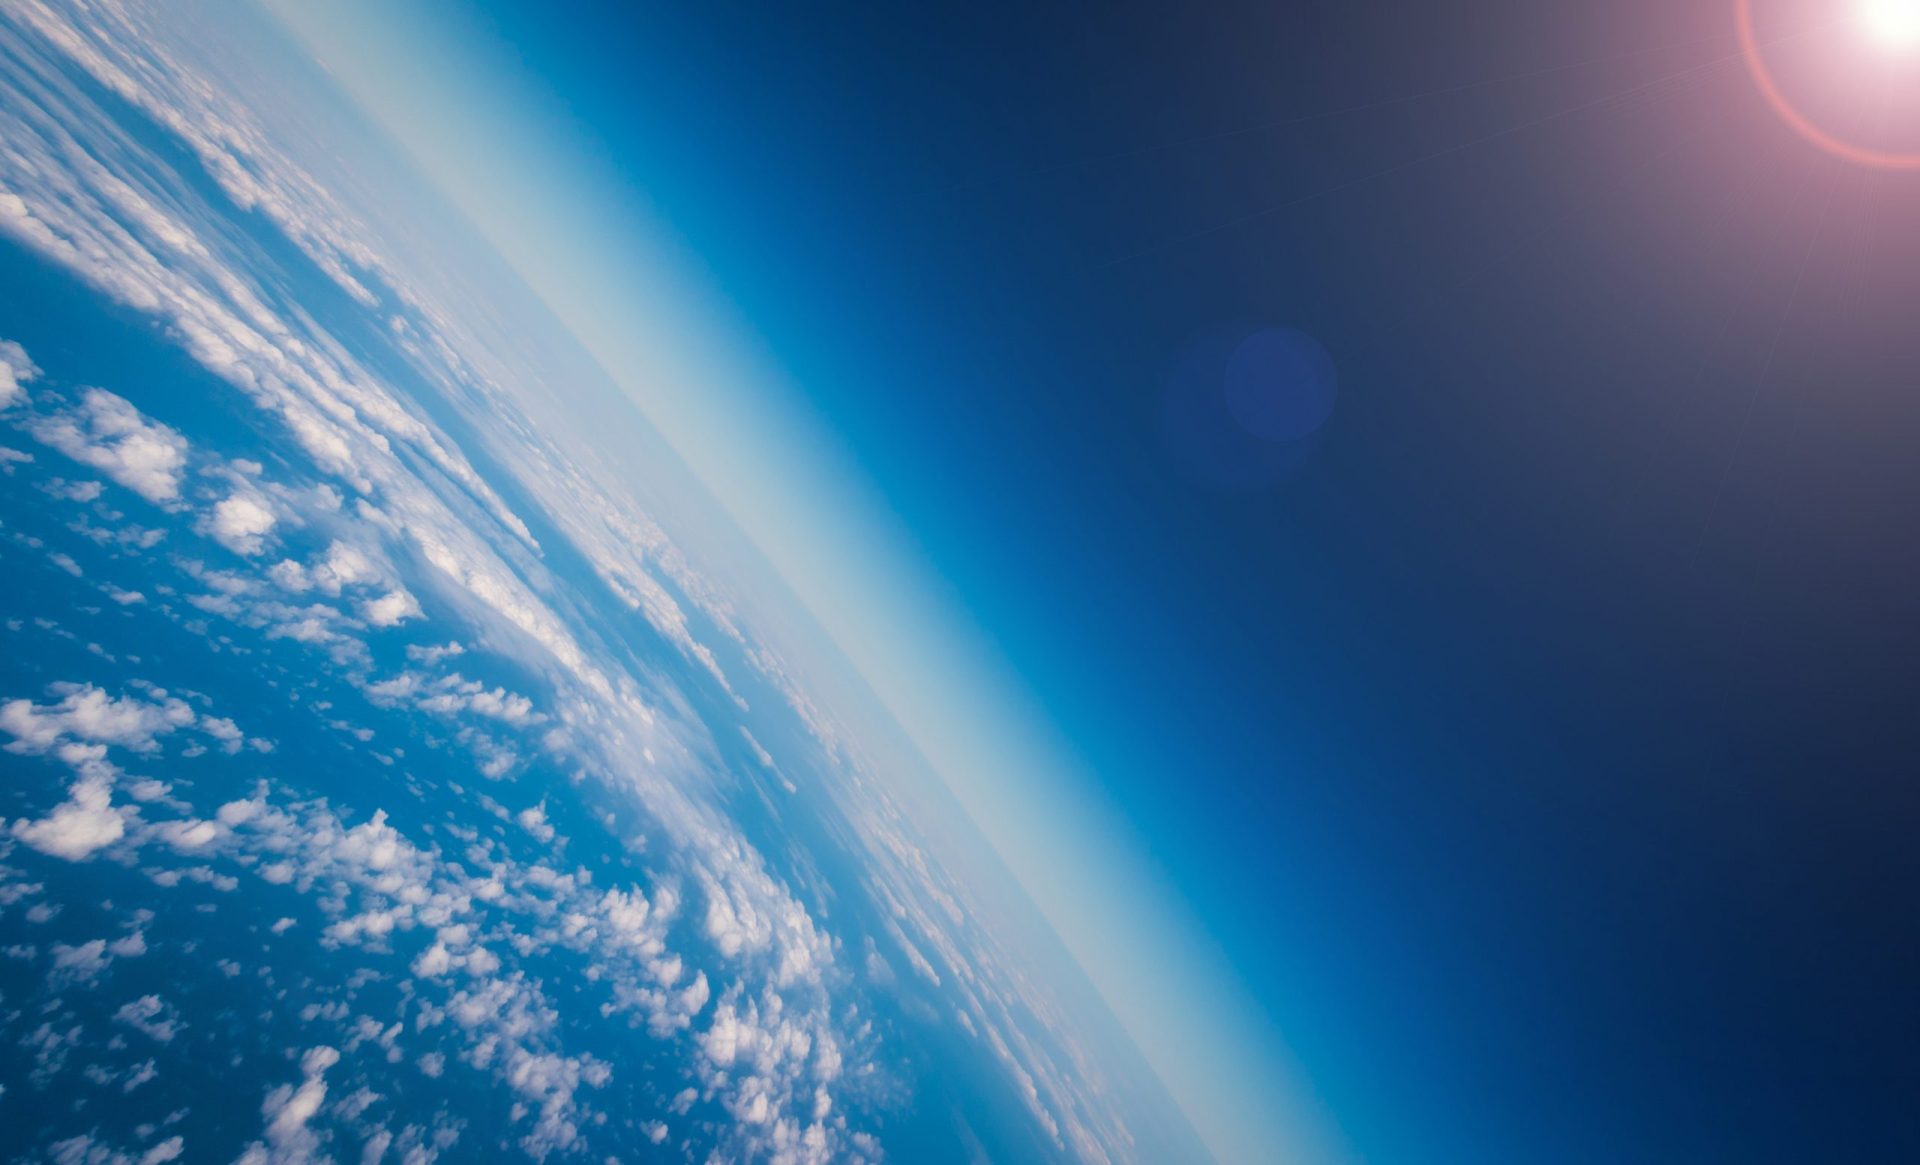 Buraco na camada de ozono está com tamanho mais baixo desde 1988